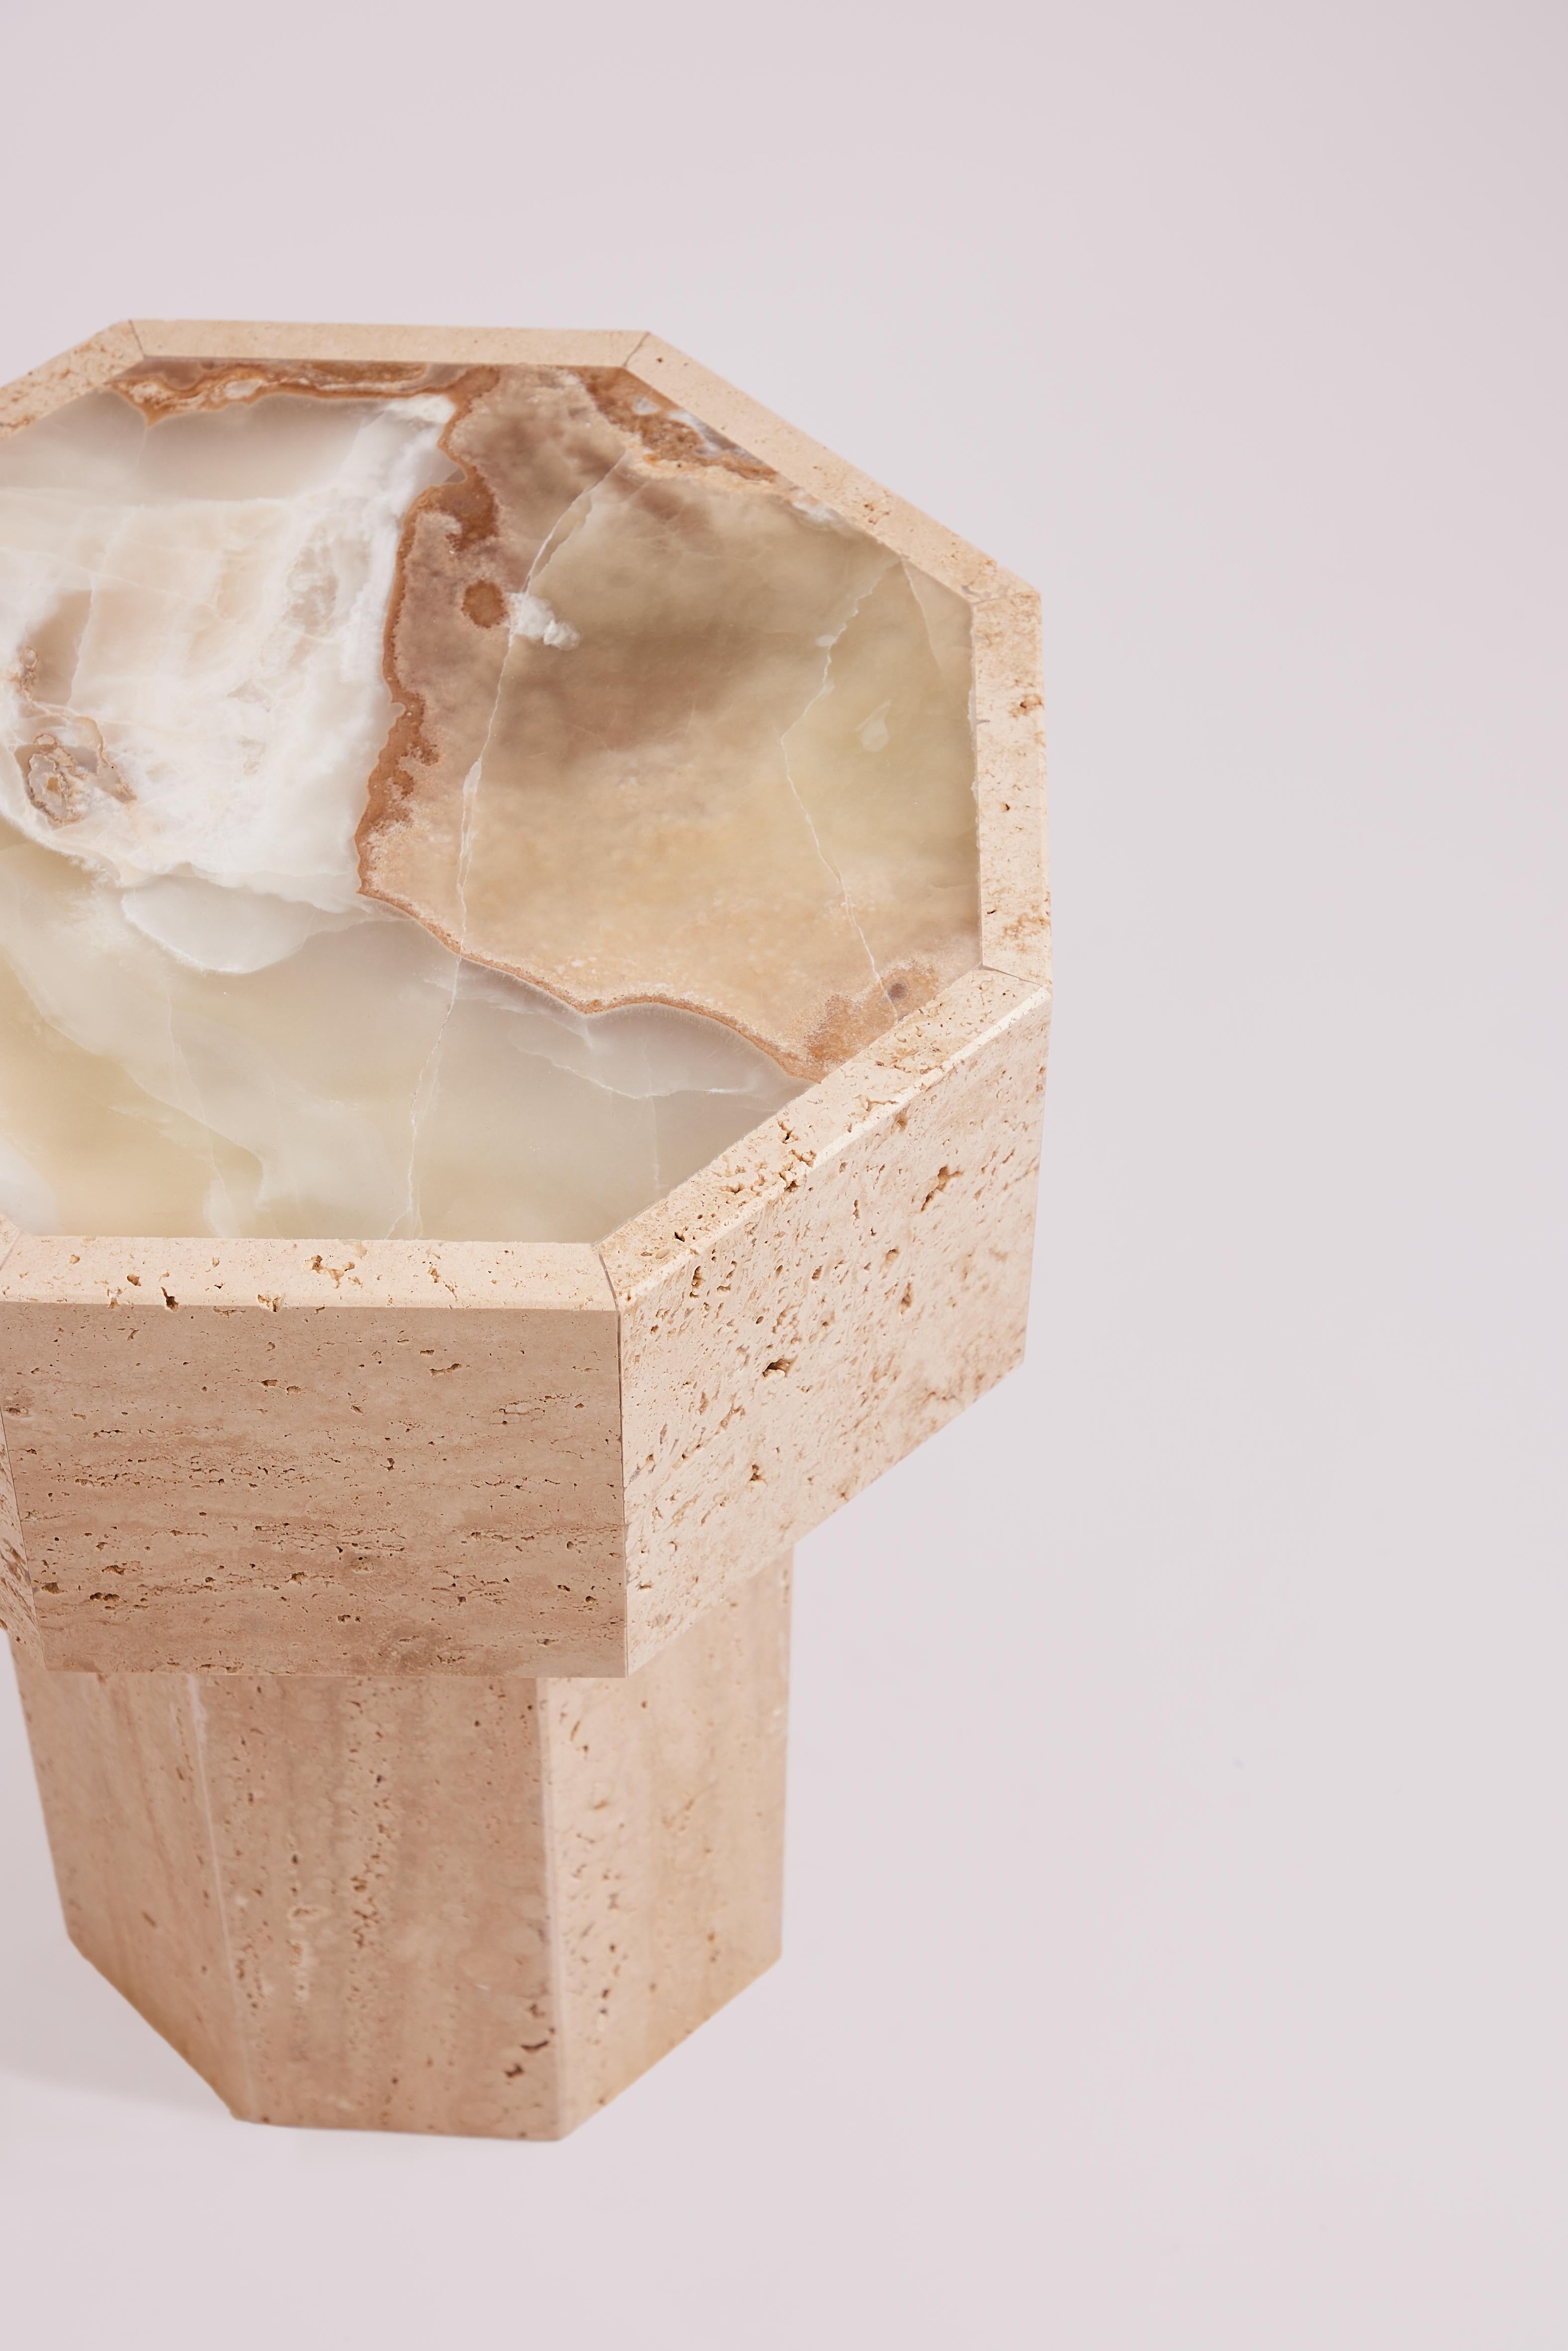 La table d'appoint Gisèle, en onyx et travertin, met en scène deux types de pierres naturelles réputées pour leur beauté unique et leurs propriétés durables.

La table d'appoint Gisèle incarne la combinaison d'une élégance naturelle et d'un design